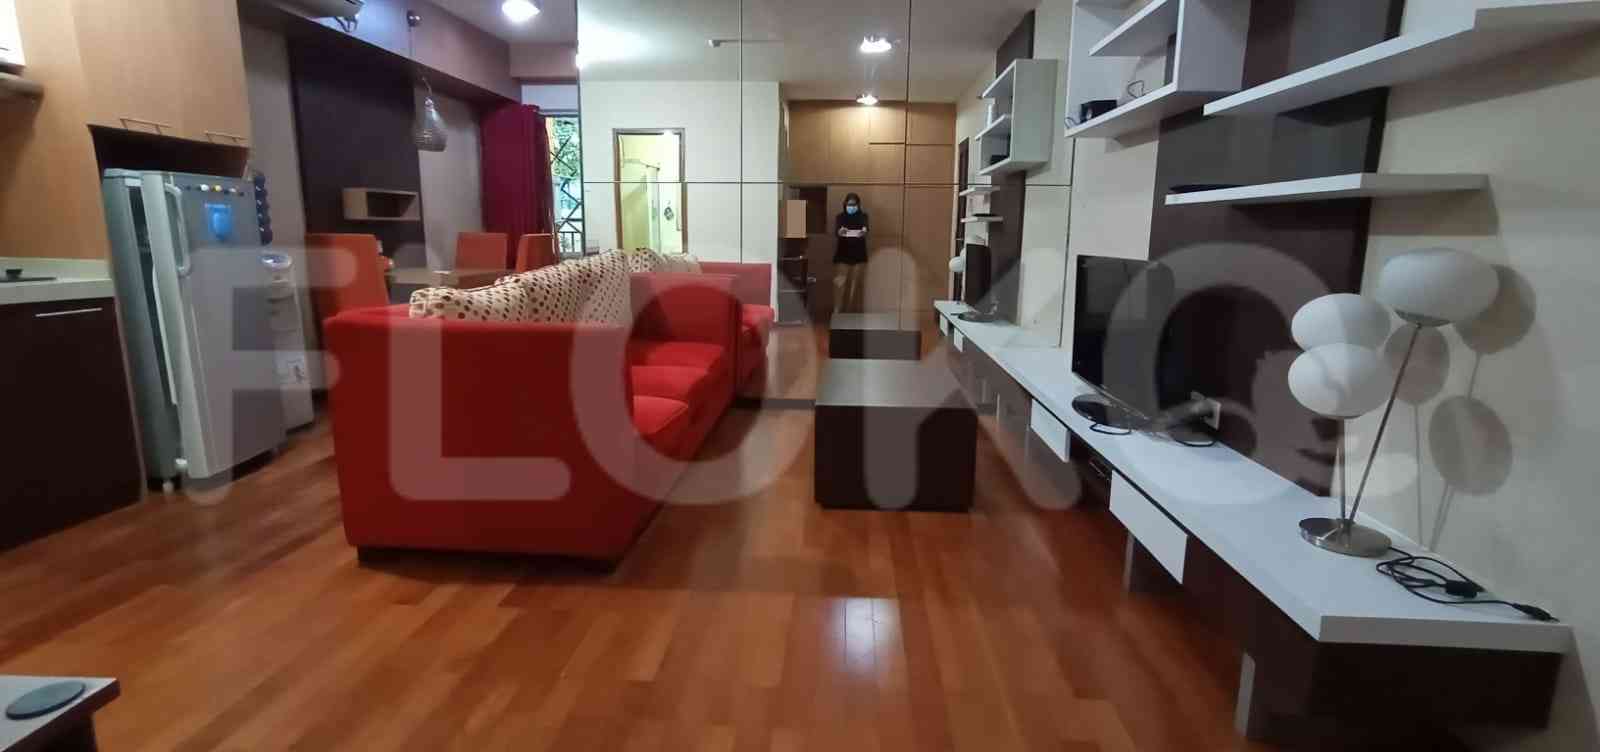 1 Bedroom on 2nd Floor for Rent in Taman Rasuna Apartment - fku2f4 3